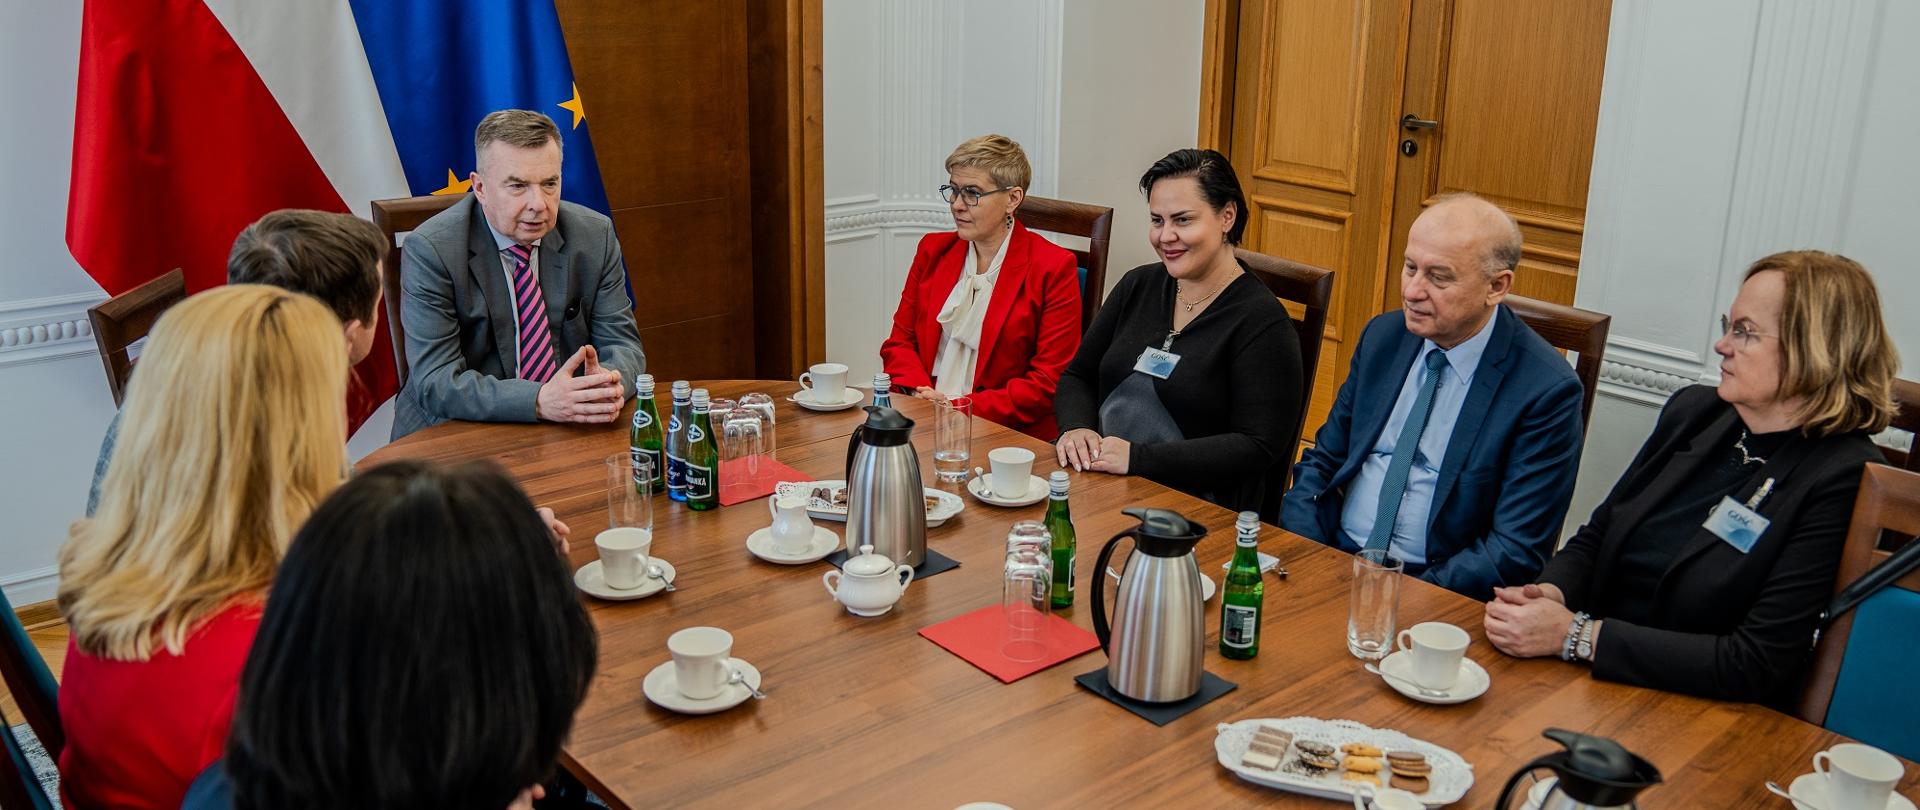 Zdjęcie z góry pod kątem, w sali przy podłużnym stole siedzą ludzie, u szczytu stołu minister Wieczorek, za nim pod ścianą flagi Polski i UE.